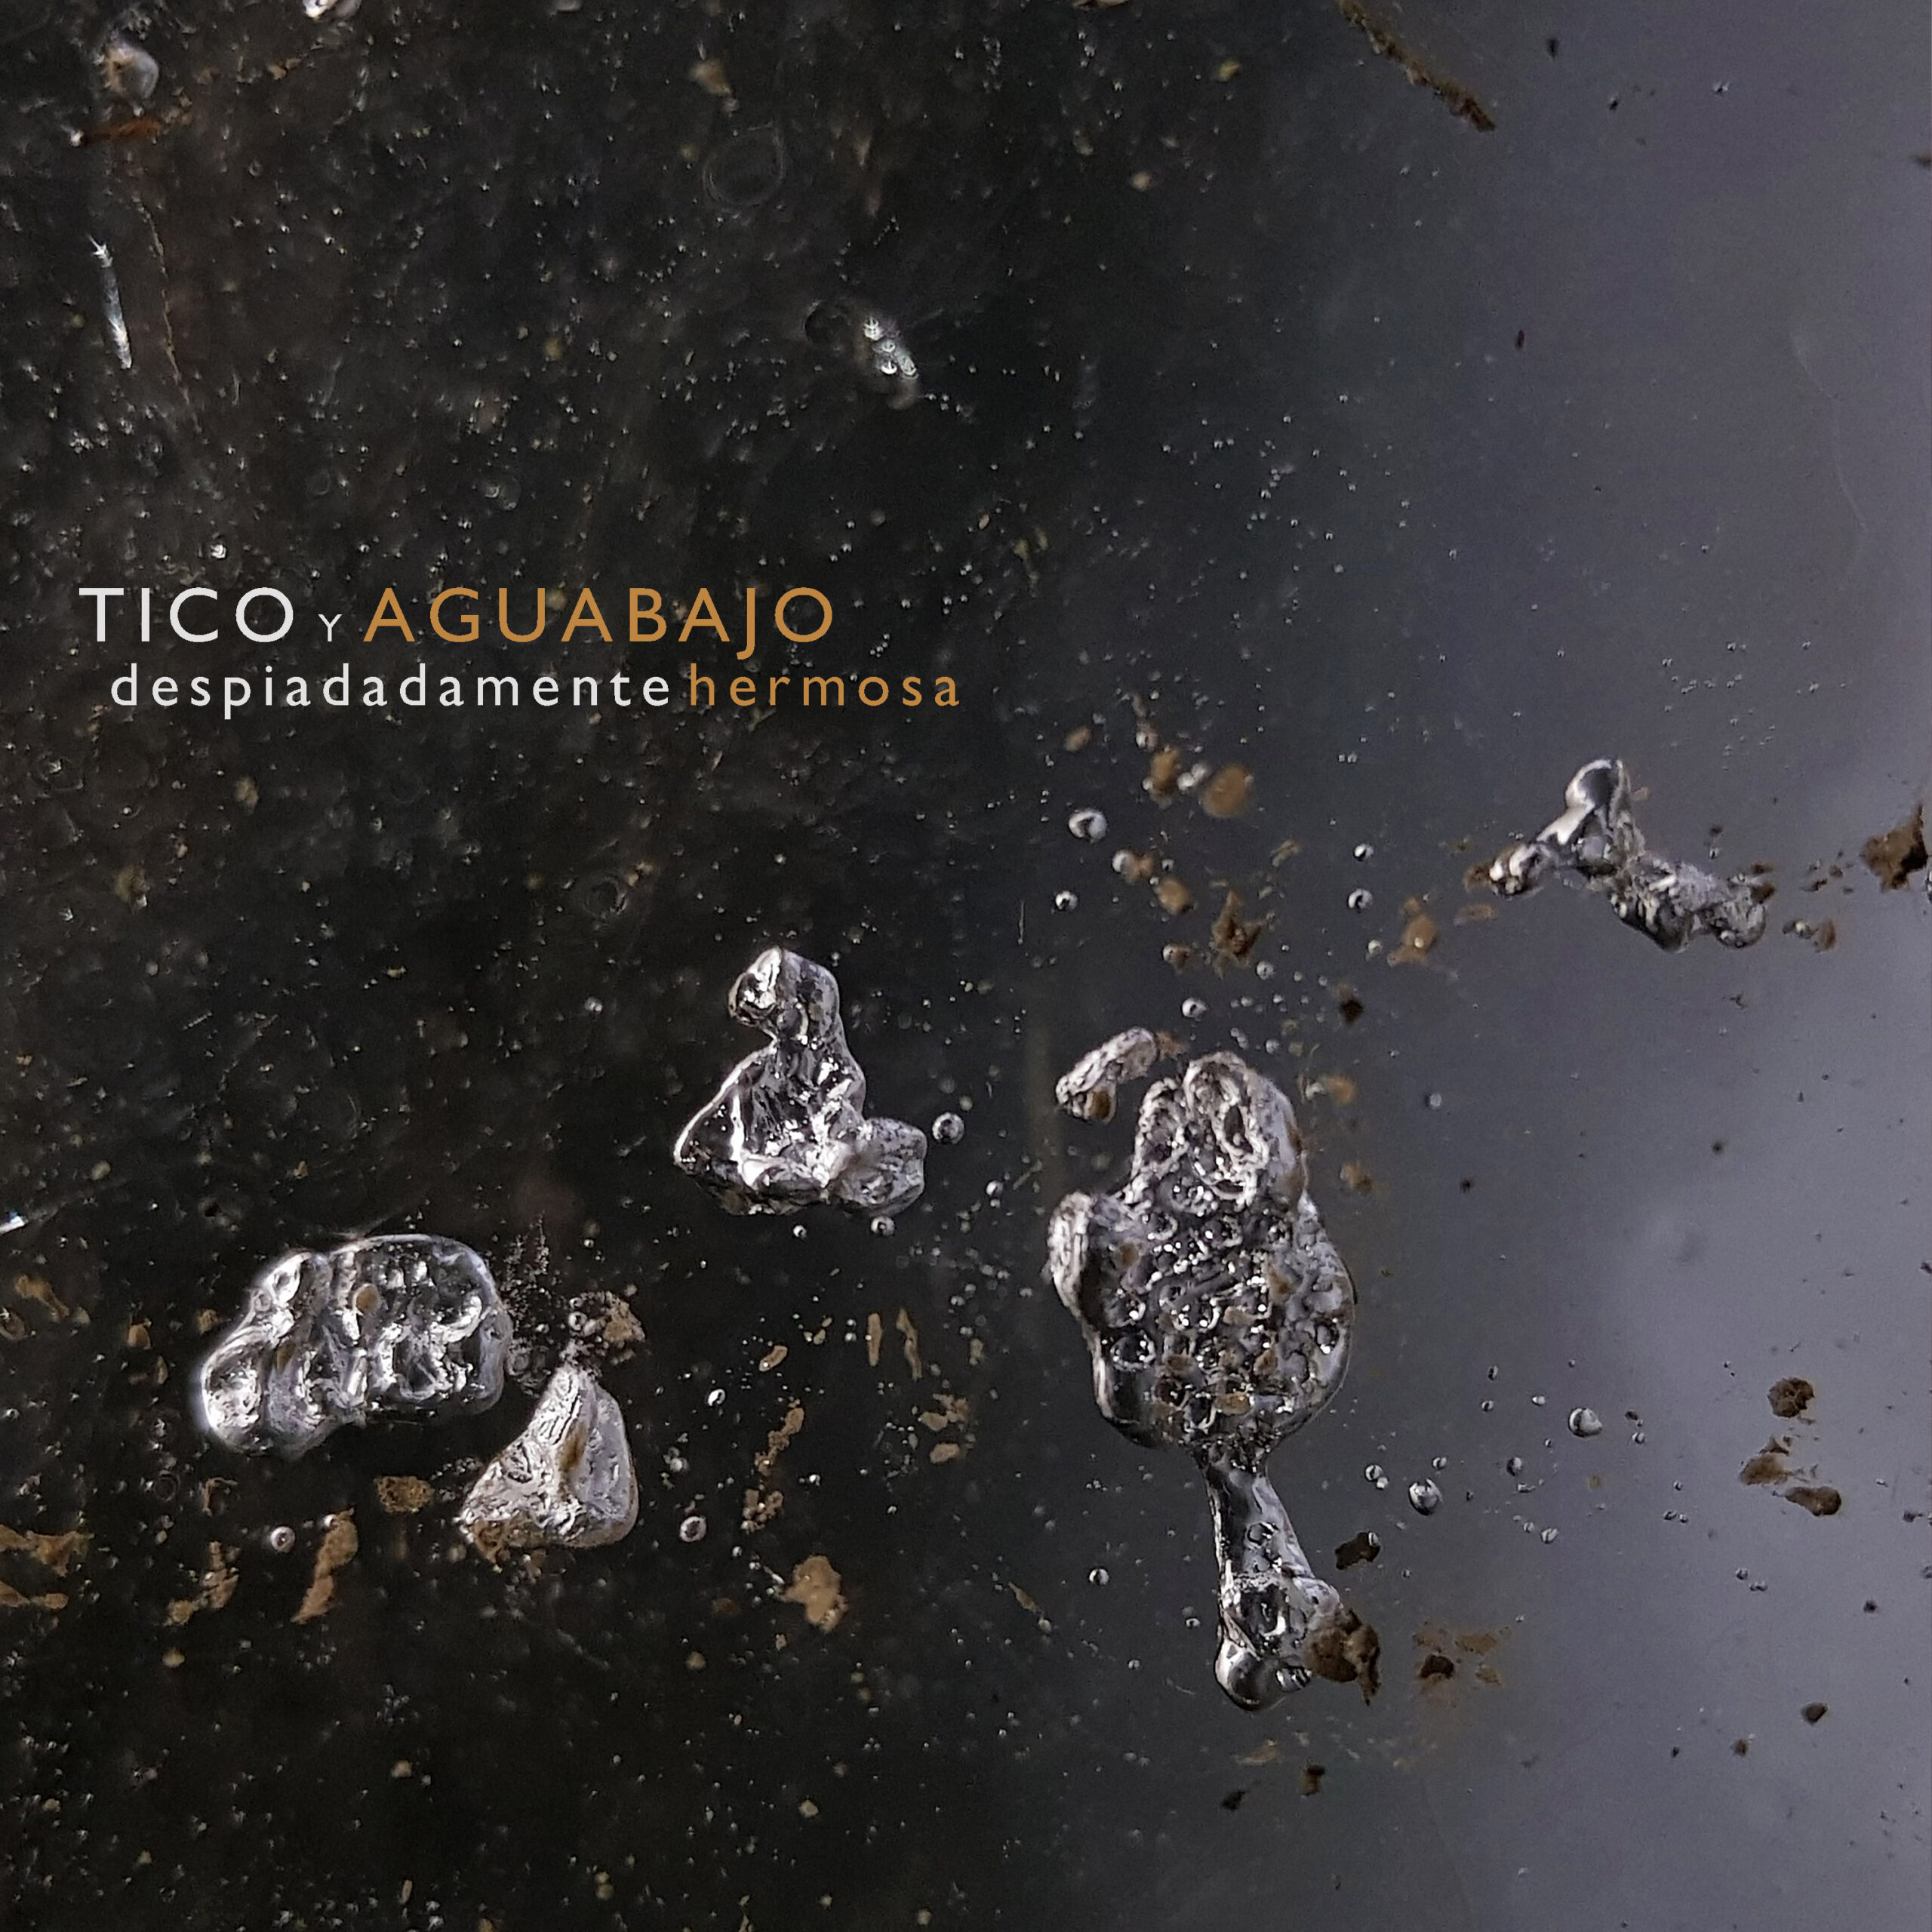 Tico y Aguabajo - despiadadamente hermosa 3000px